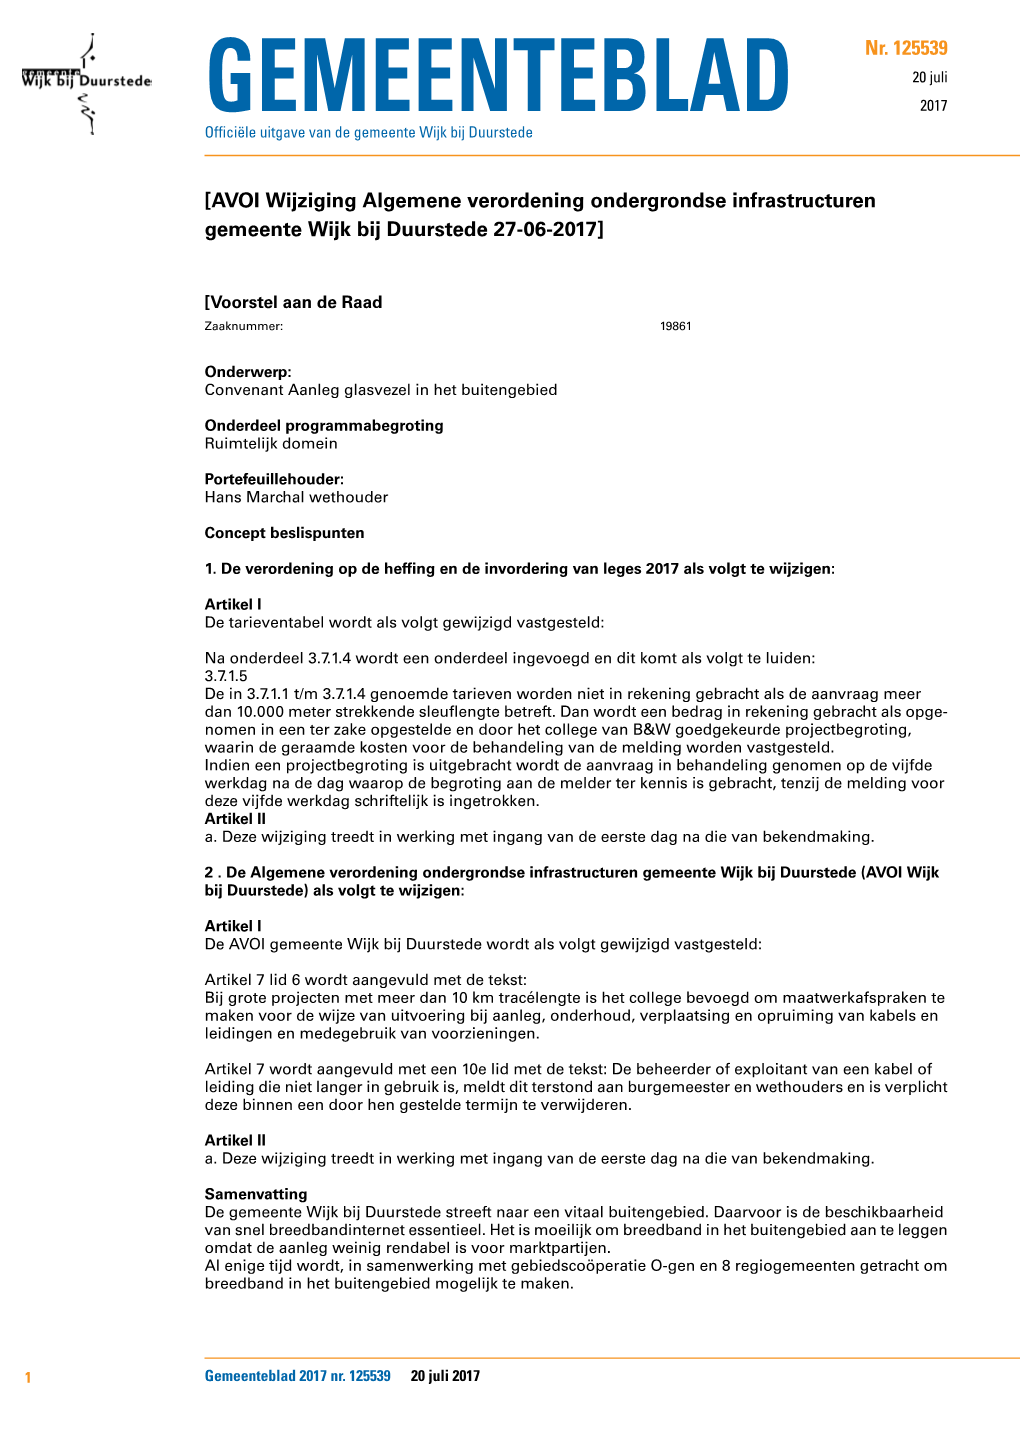 AVOI Wijziging Algemene Verordening Ondergrondse Infrastructuren Gemeente Wijk Bij Duurstede 27-06-2017]